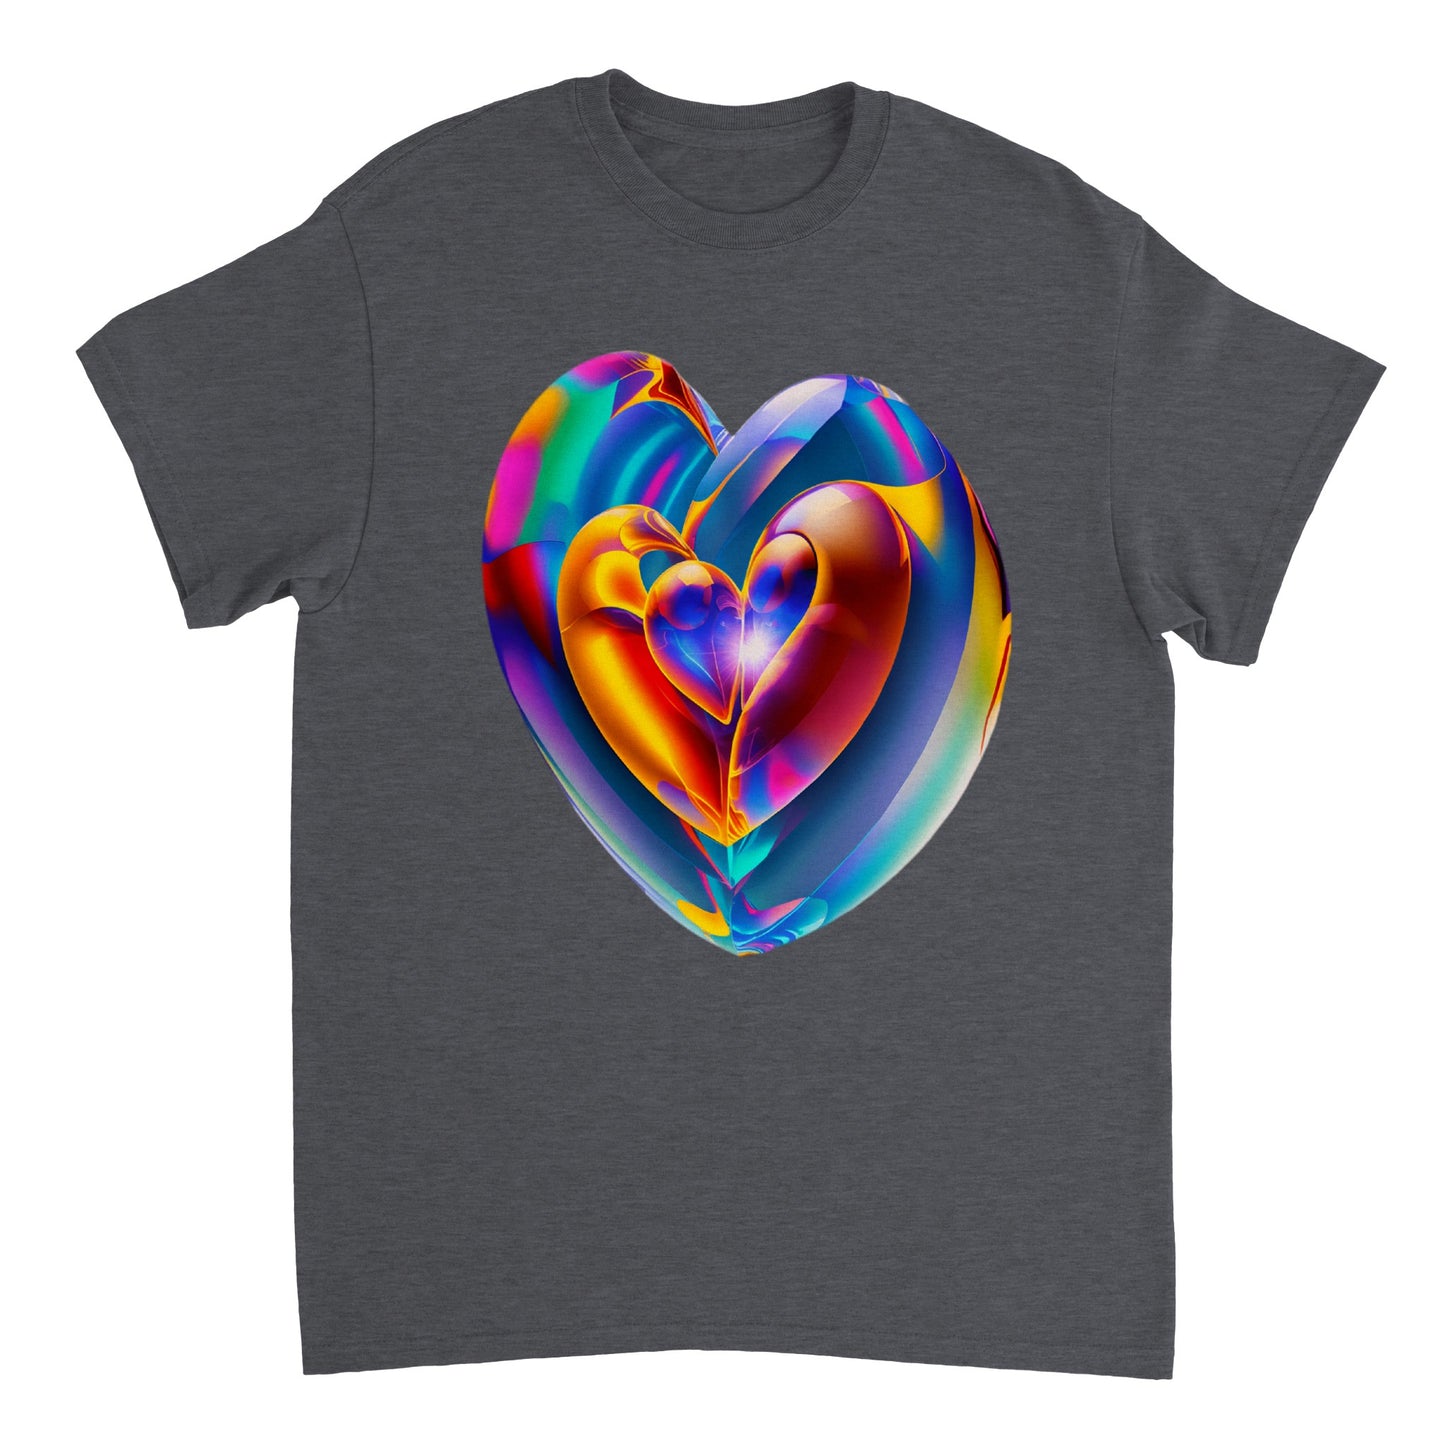 Love Heart - Heavyweight Unisex Crewneck T-shirt 39